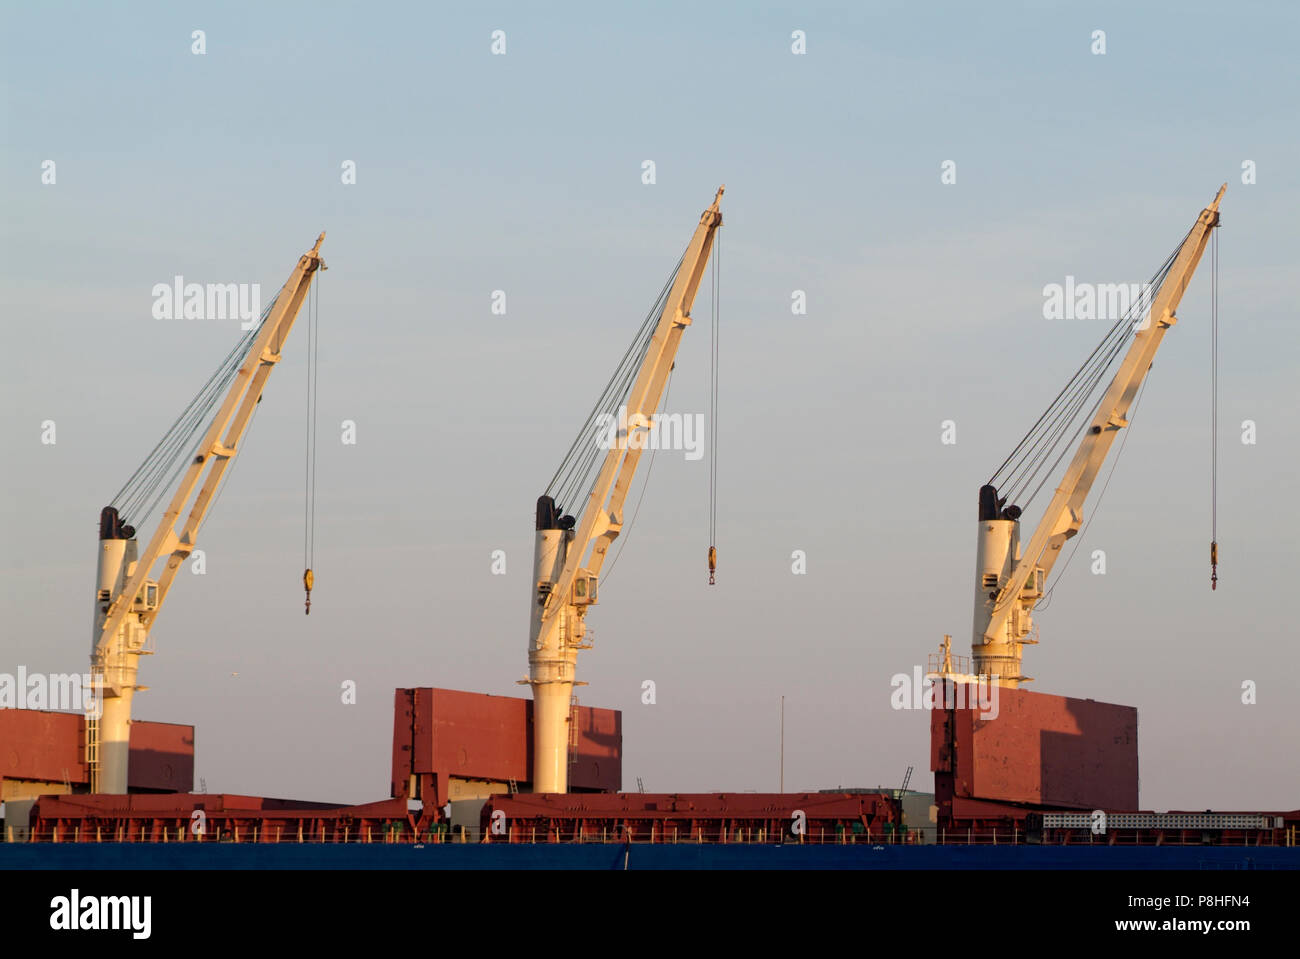 Drei Kraene auf einem Frachter im Hamburger Hafen, synchron ausgerichtet. © Martin Langer/Agentur FOCUS Foto Stock